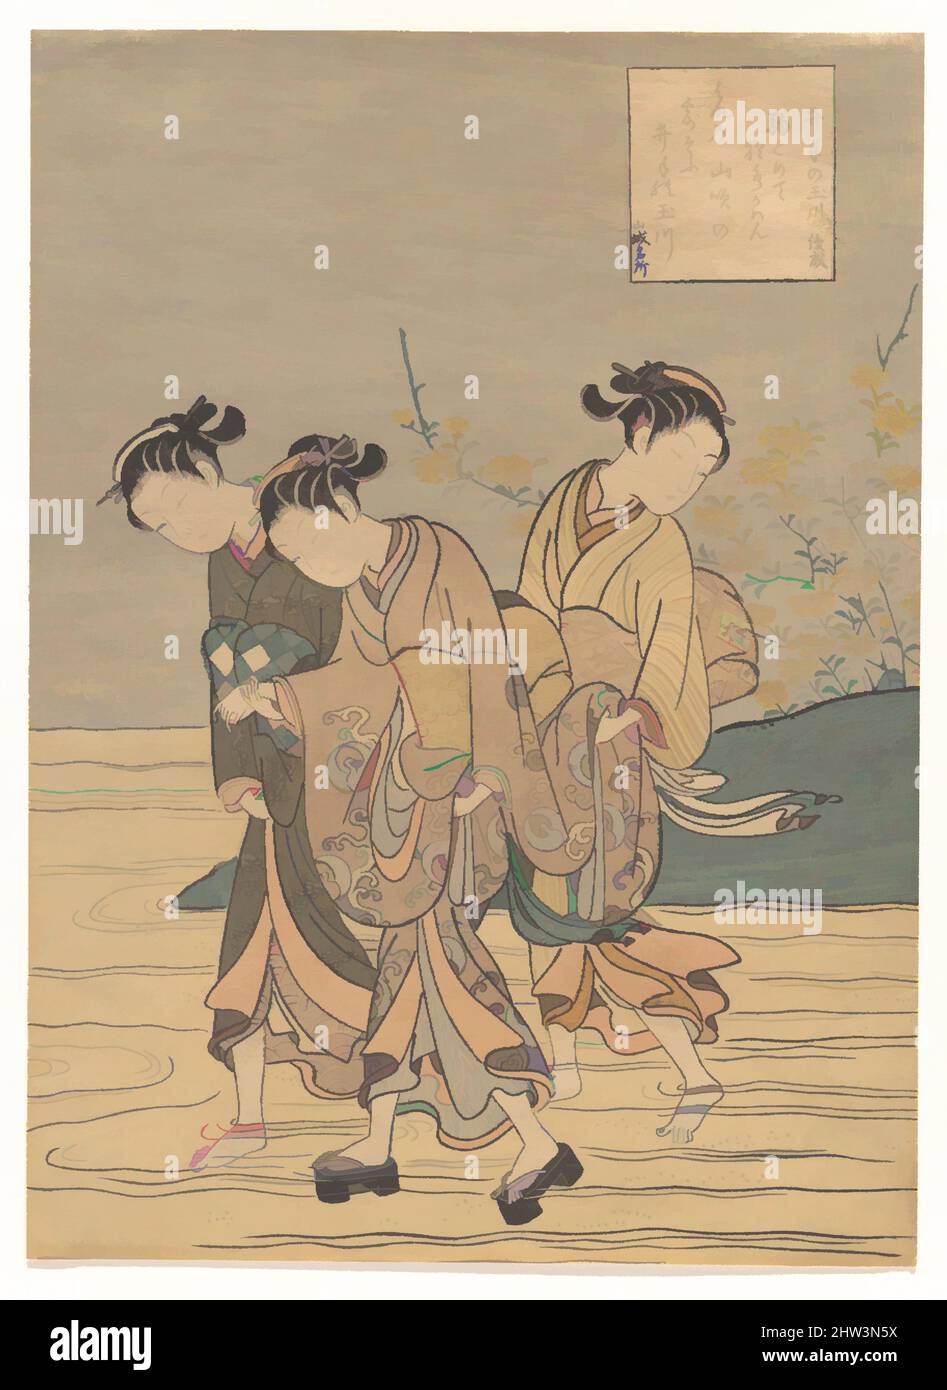 Arte ispirata da 井手の玉川, il fiume Tama a IDE, provincia di Yamashiro, periodo Edo (1615-1868), probabilmente 1766, Giappone, Stampa a blocchi di legno policromi; inchiostro e colore su carta, 10 1/4 x 7 3/4 pollici (26 x 19,7 cm), stampe, Suzuki Harunobu (giapponese, 1725–1770), la poesia del luogo e del nome del luogo ha un, opere classiche modernizzate da Artotop con un tuffo di modernità. Forme, colore e valore, impatto visivo accattivante sulle emozioni artistiche attraverso la libertà delle opere d'arte in modo contemporaneo. Un messaggio senza tempo che persegue una nuova direzione selvaggiamente creativa. Artisti che si rivolgono al supporto digitale e creano l'NFT Artotop Foto Stock